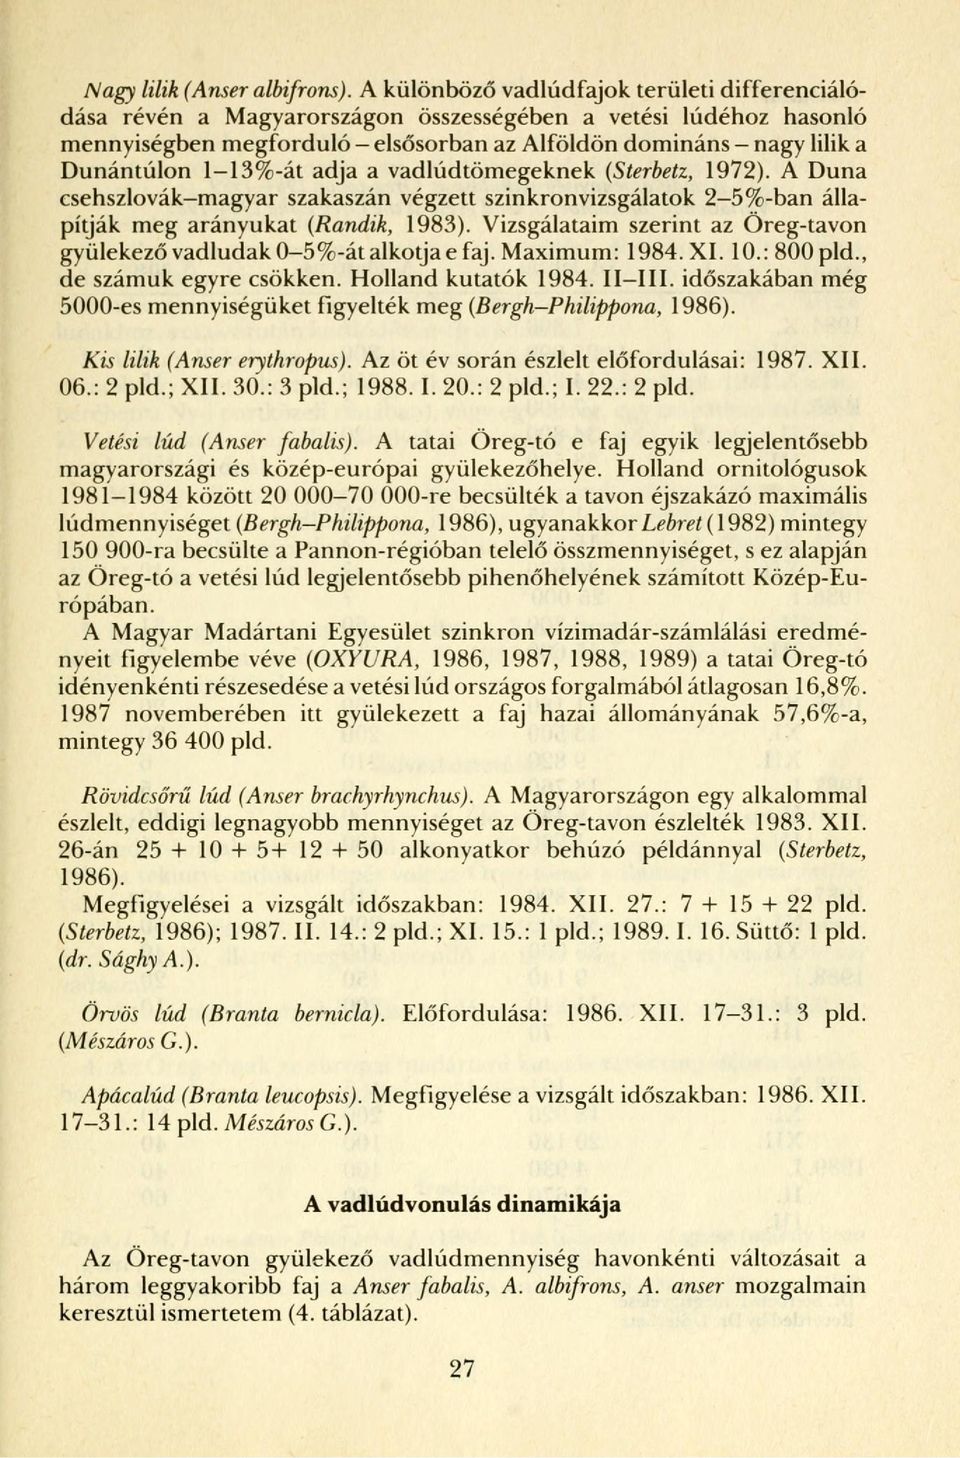 1-13%-át adja a vadlúdtömegeknek (Sterbetz, 1972). A Duna csehszlovák-magyar szakaszán végzett szinkronvizsgálatok 2-5%-ban állapítják meg arányukat (Randik, 1983).